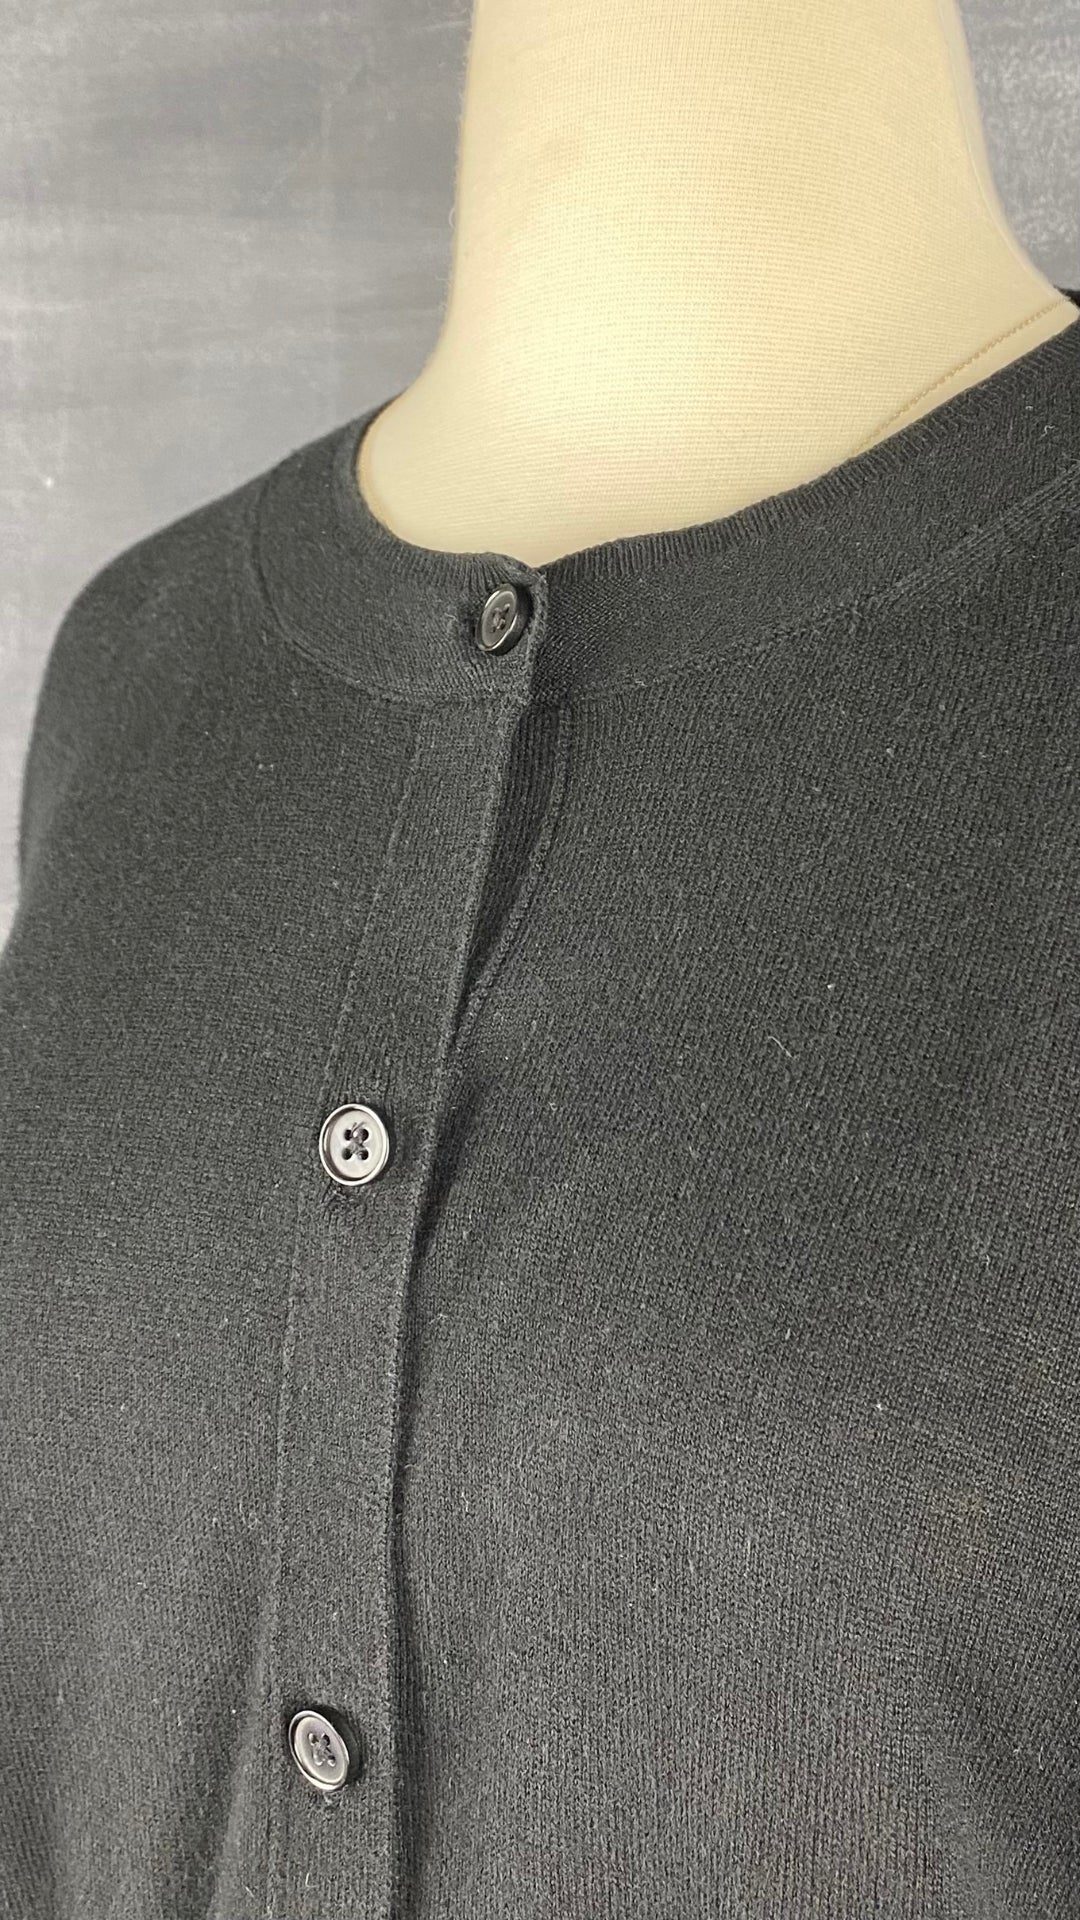 Cardigan boutonné noir en tricot mince à col rond Banana Republic, taille large. Vue de près de l'encolure.